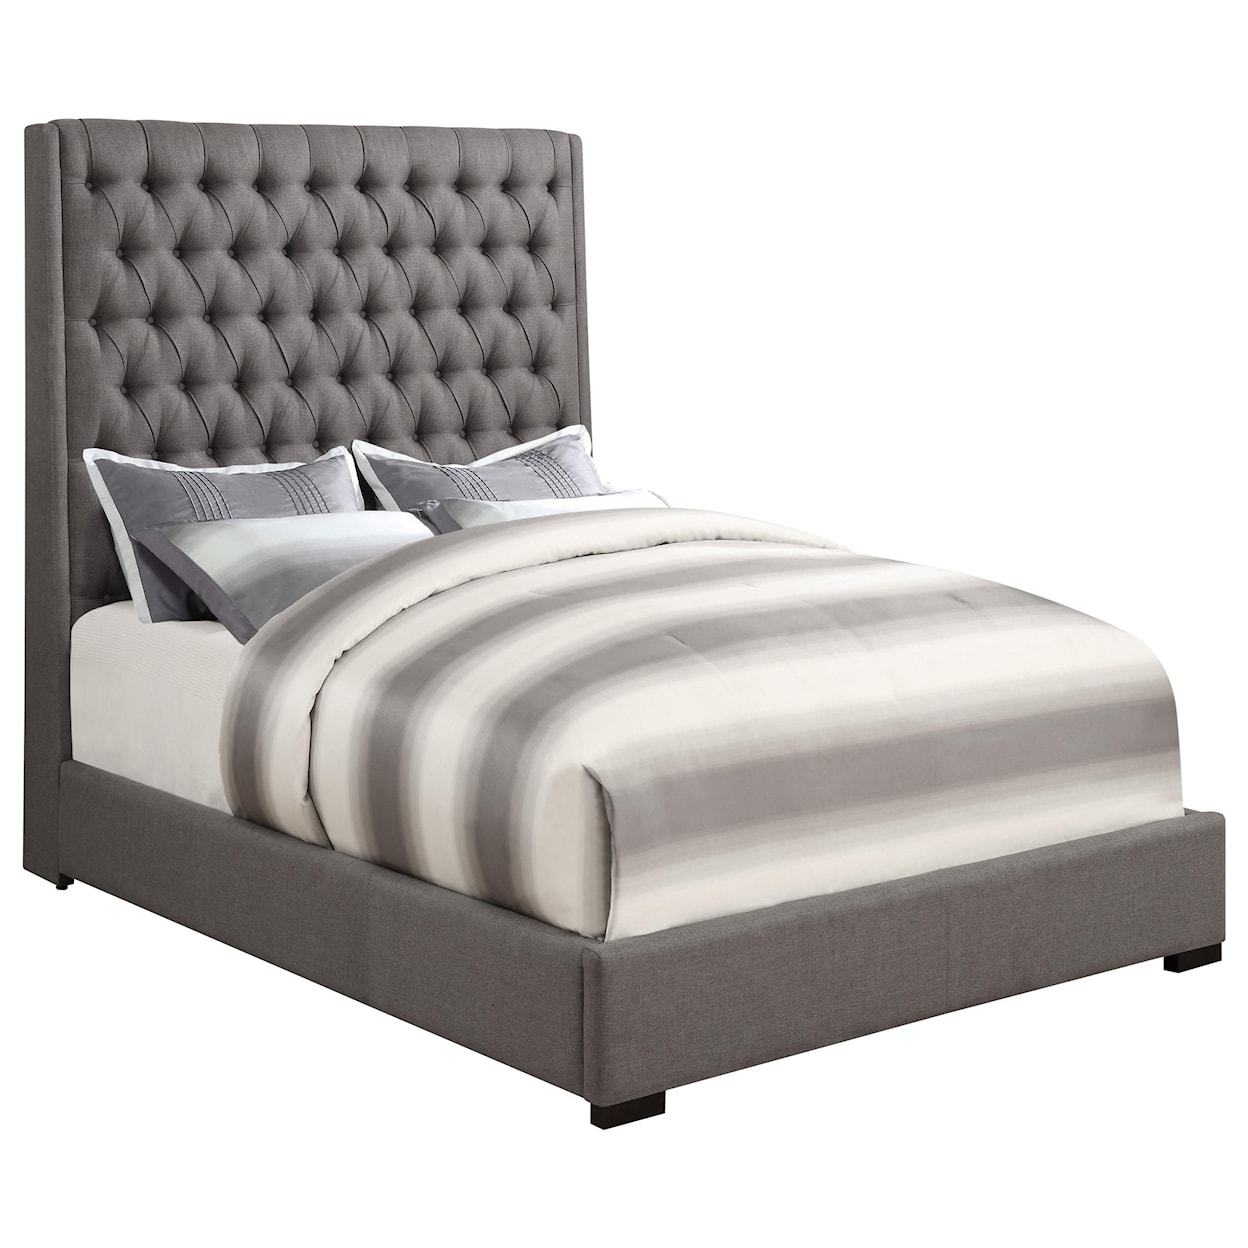 Coaster Upholstered Beds King Bed